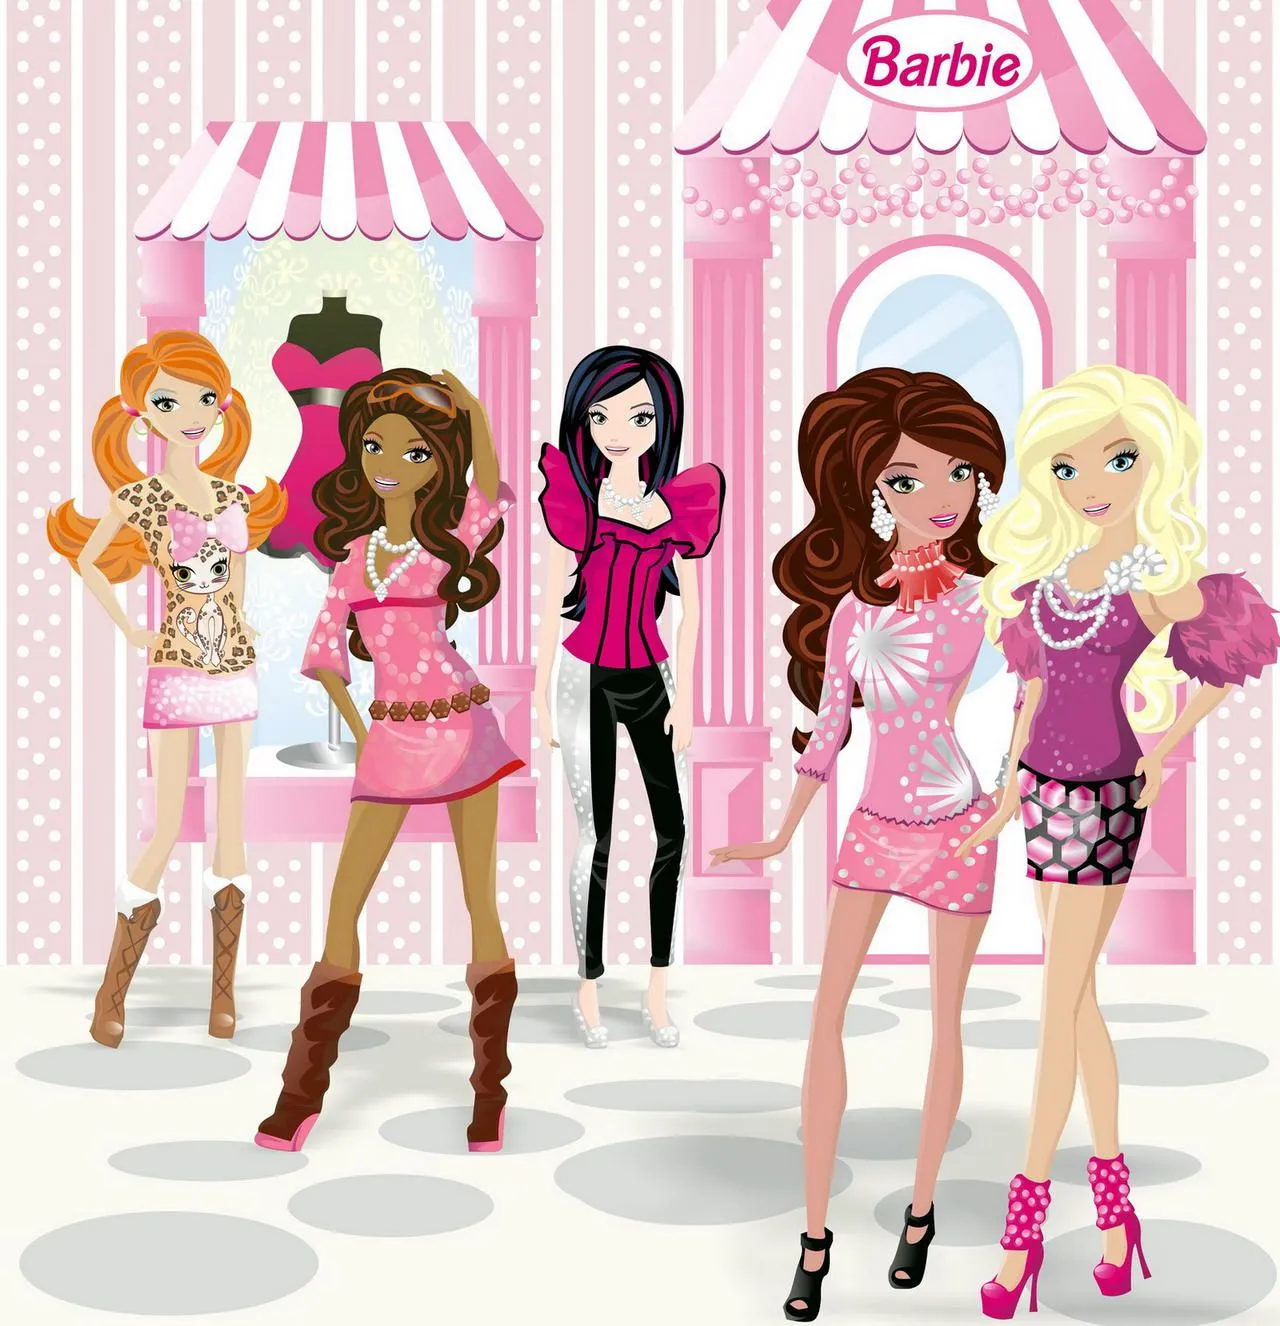 Barbie Fashionistas by ArryKaZone on DeviantArt